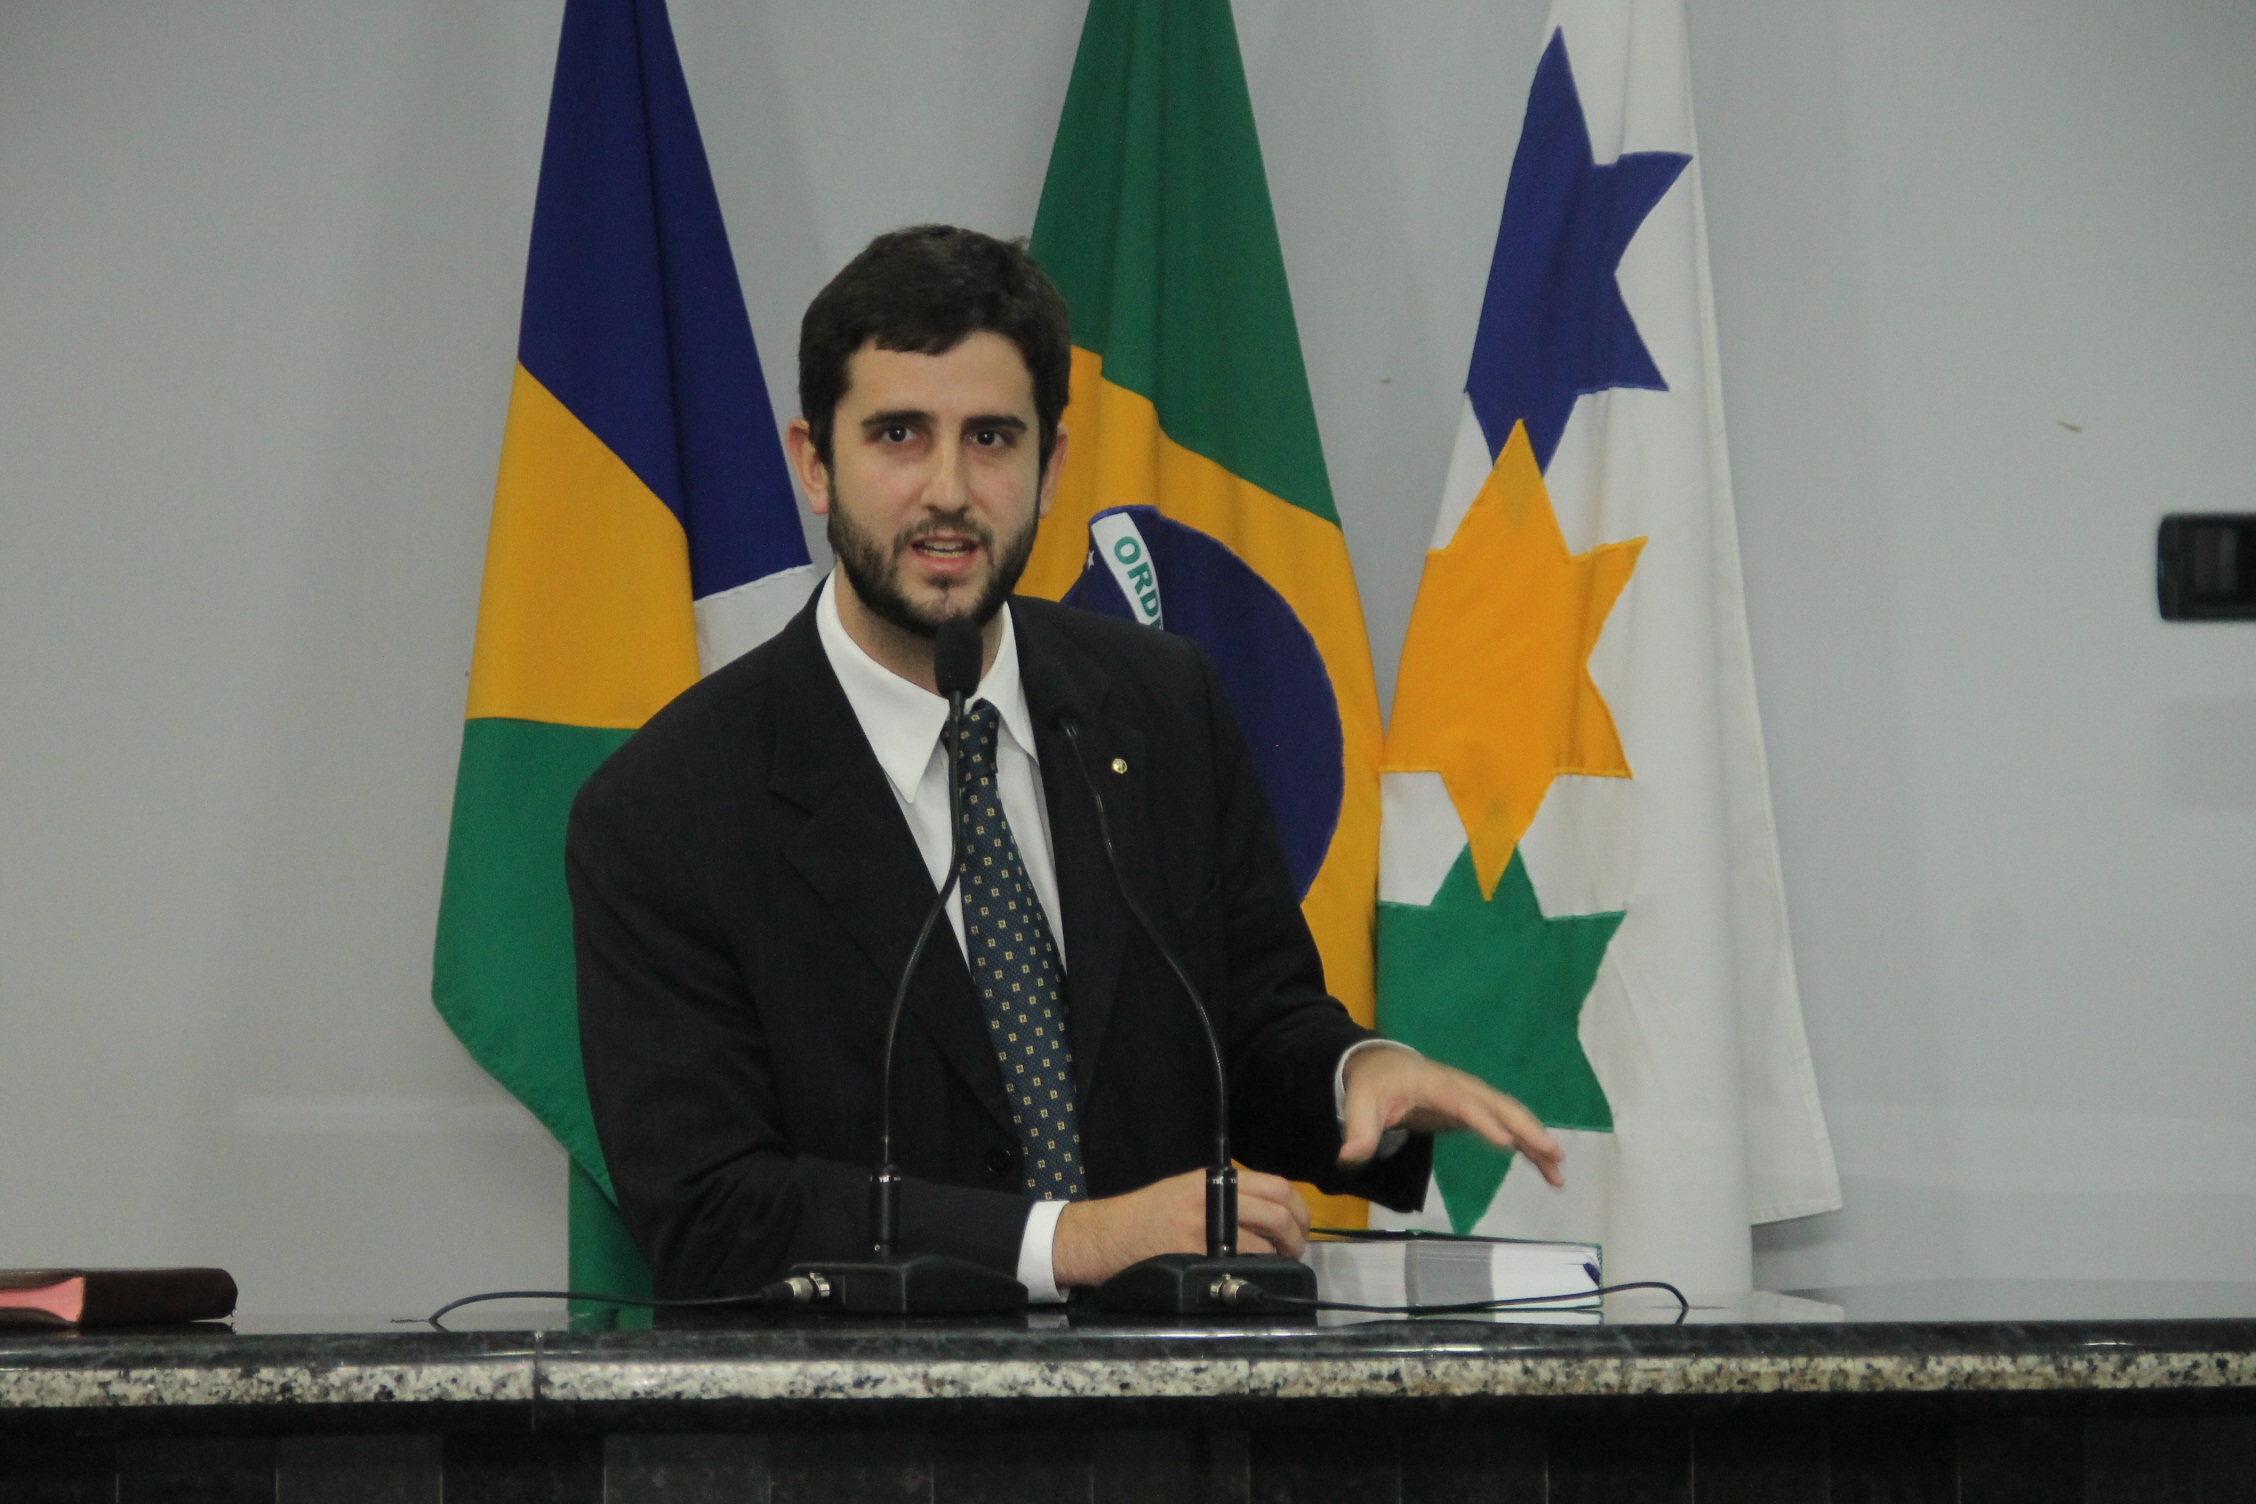 Câmara de Vereadores e Defensoria Pública firmam parceria